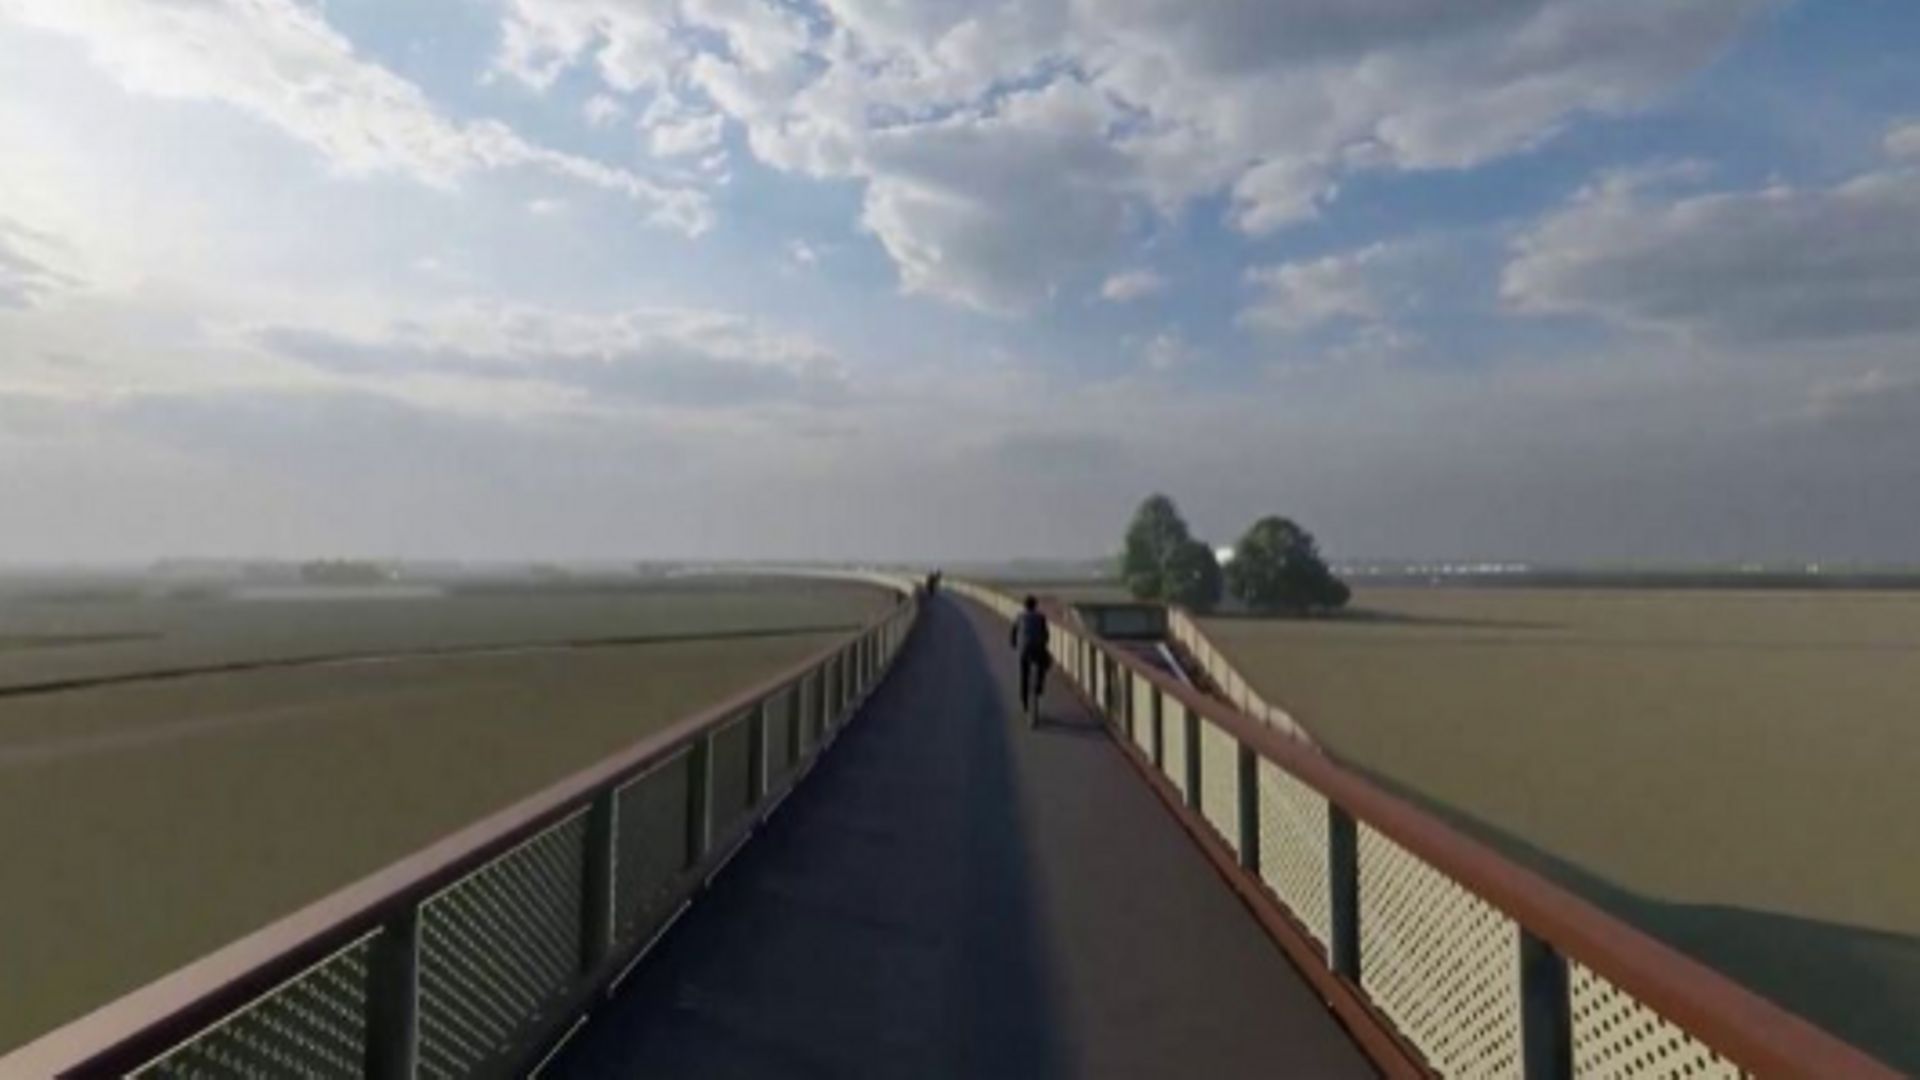 Les images du plus long pont cyclable d'Europe en construction dans le nord des Pays-Bas